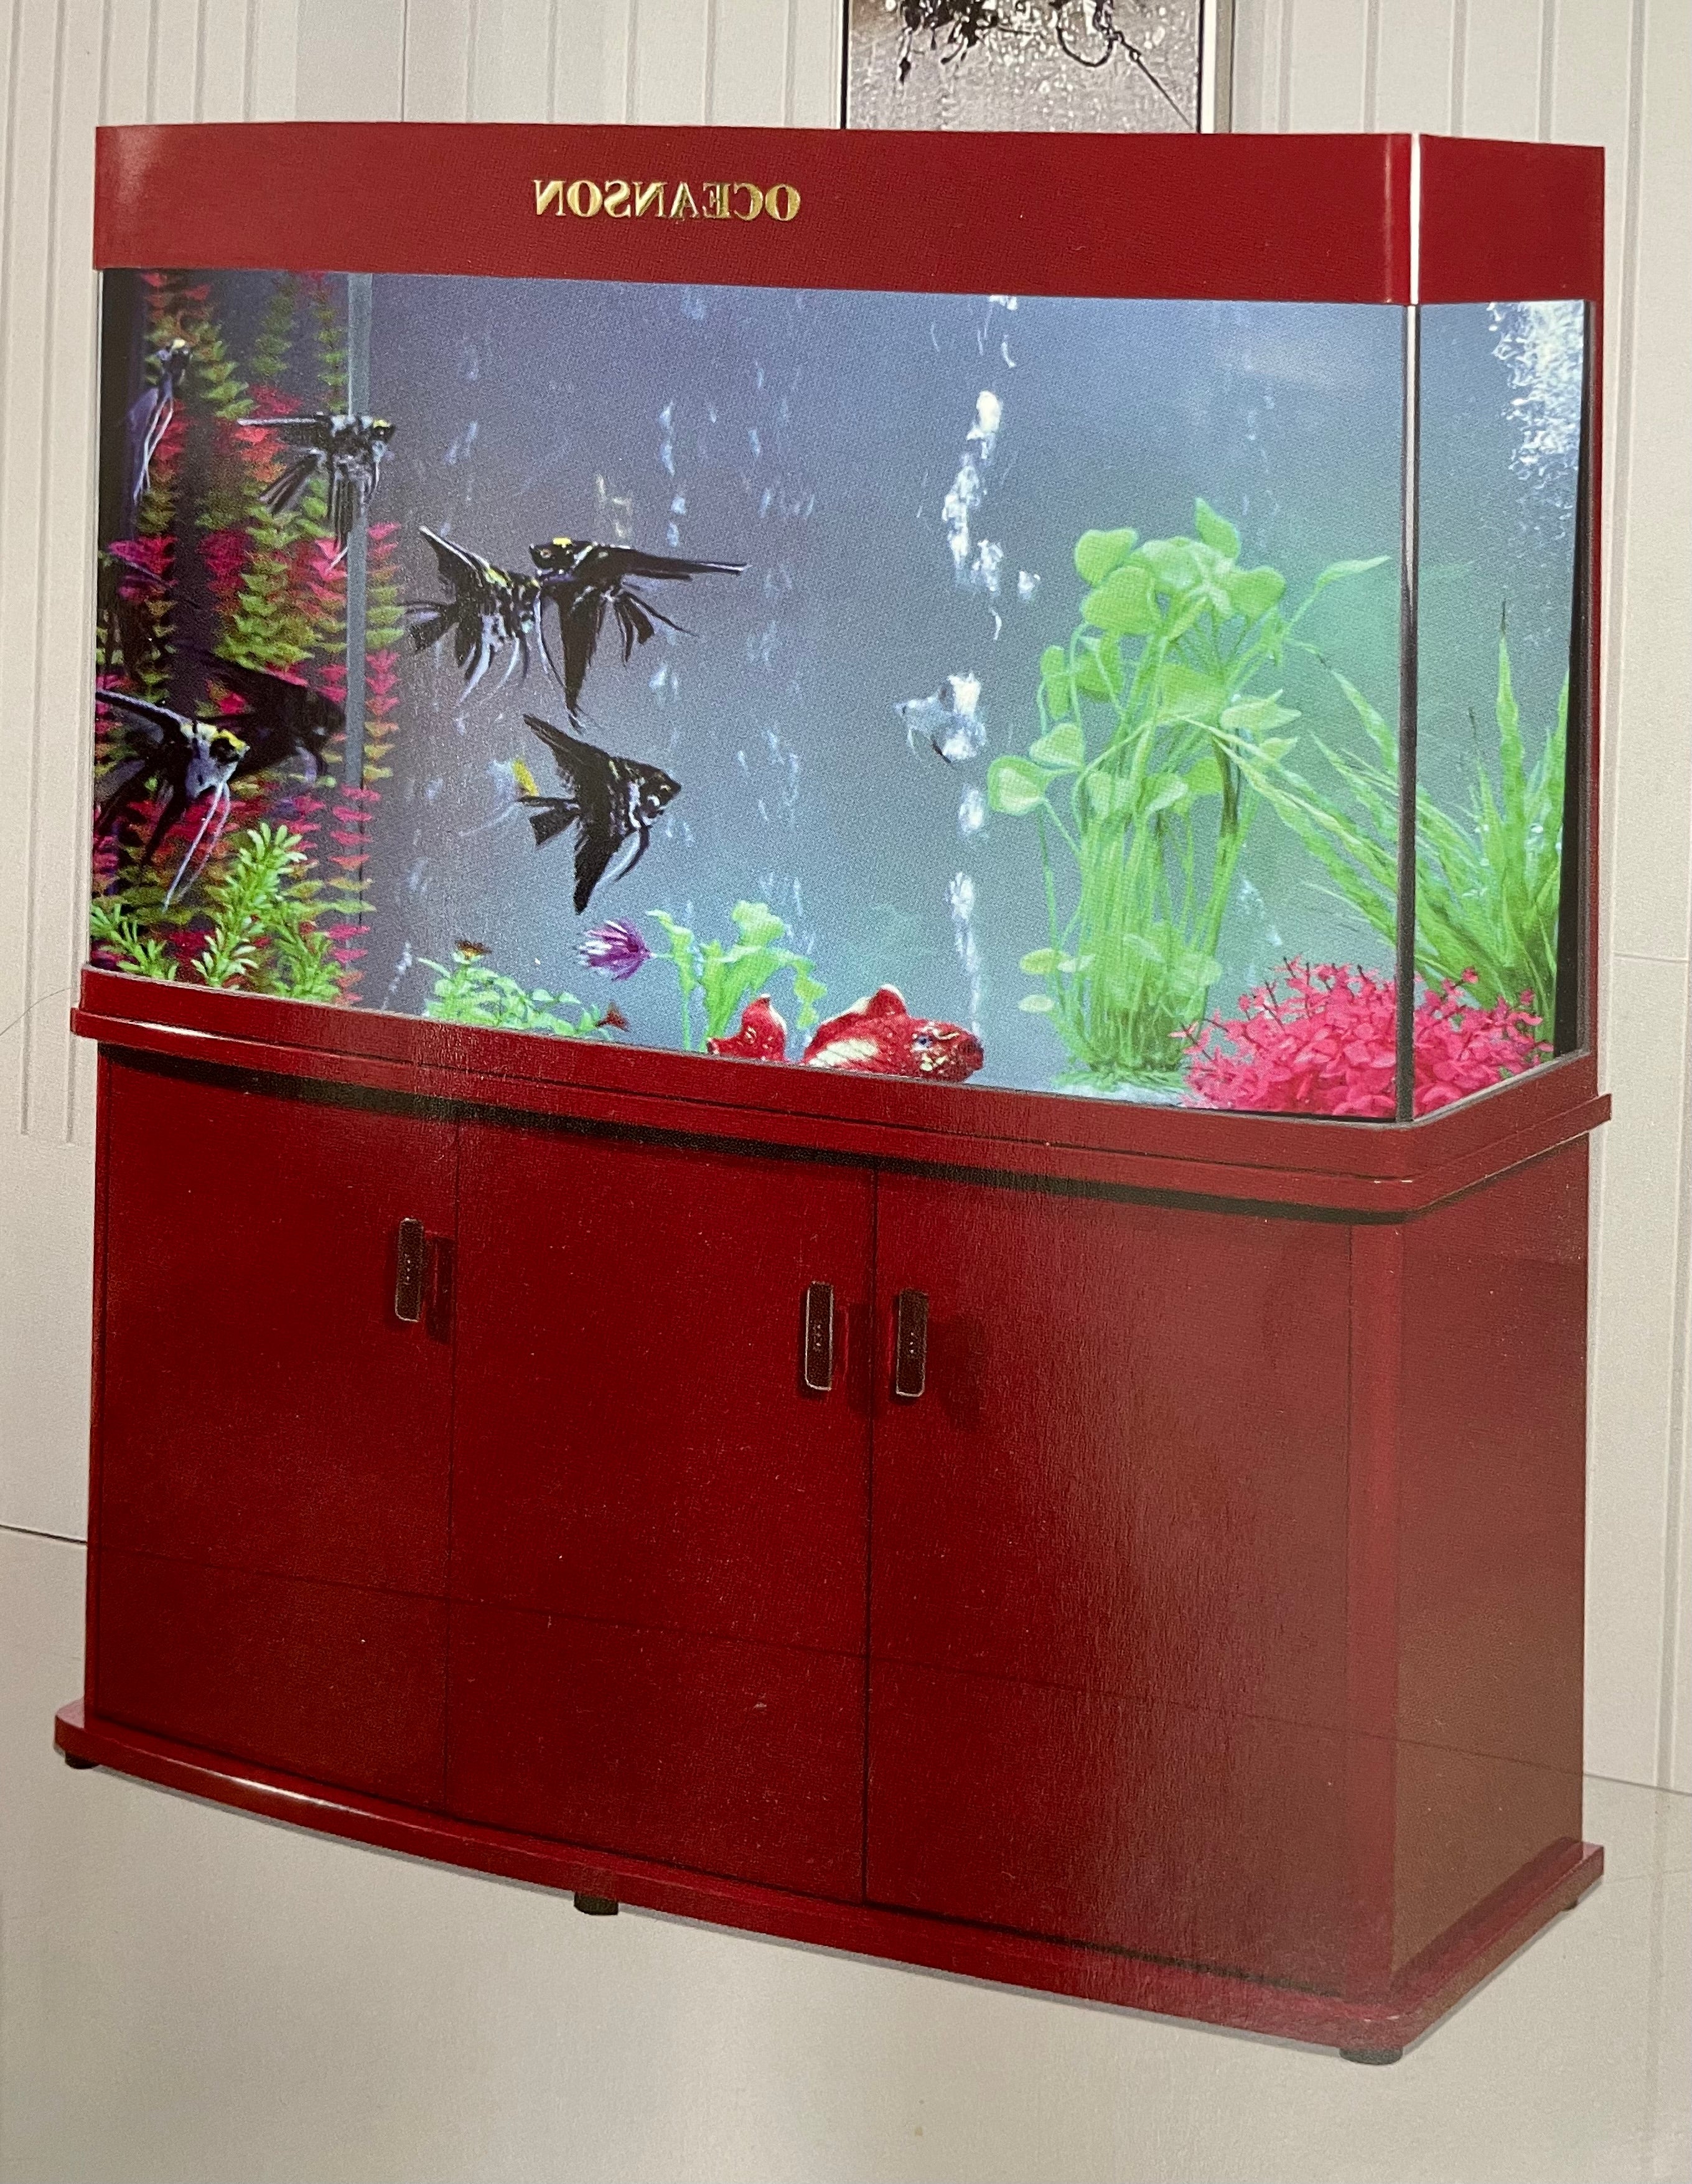 Oceanson RGM153 - 153cm Curved Face Aquarium, Cabinet and Sump